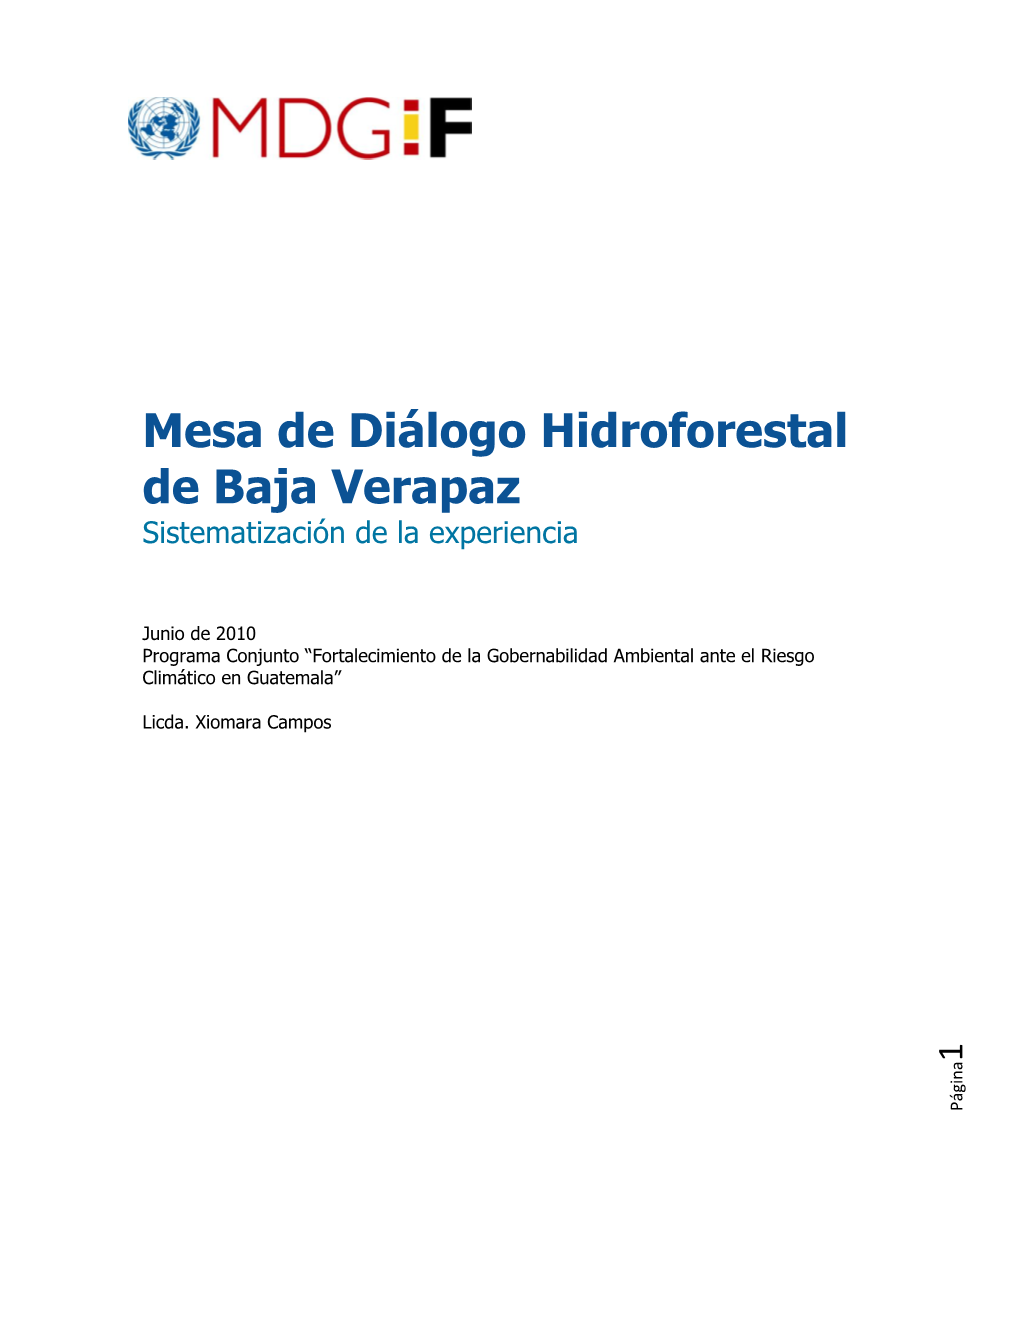 Mesa Hidroforestal De Baja Verapaz, Guatemala. Sistematización De La